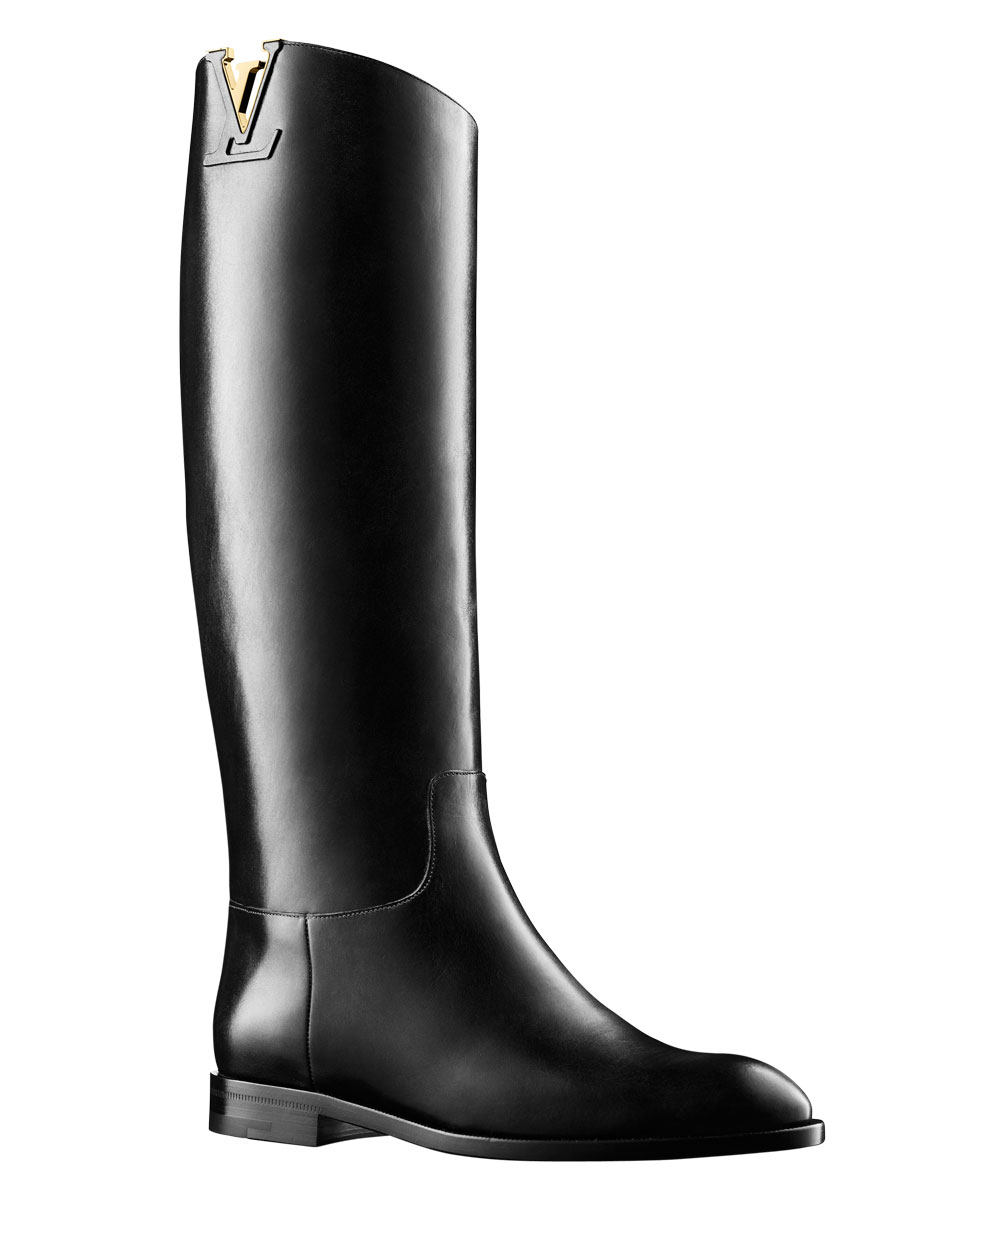 Louis Vuitton knee-high boots